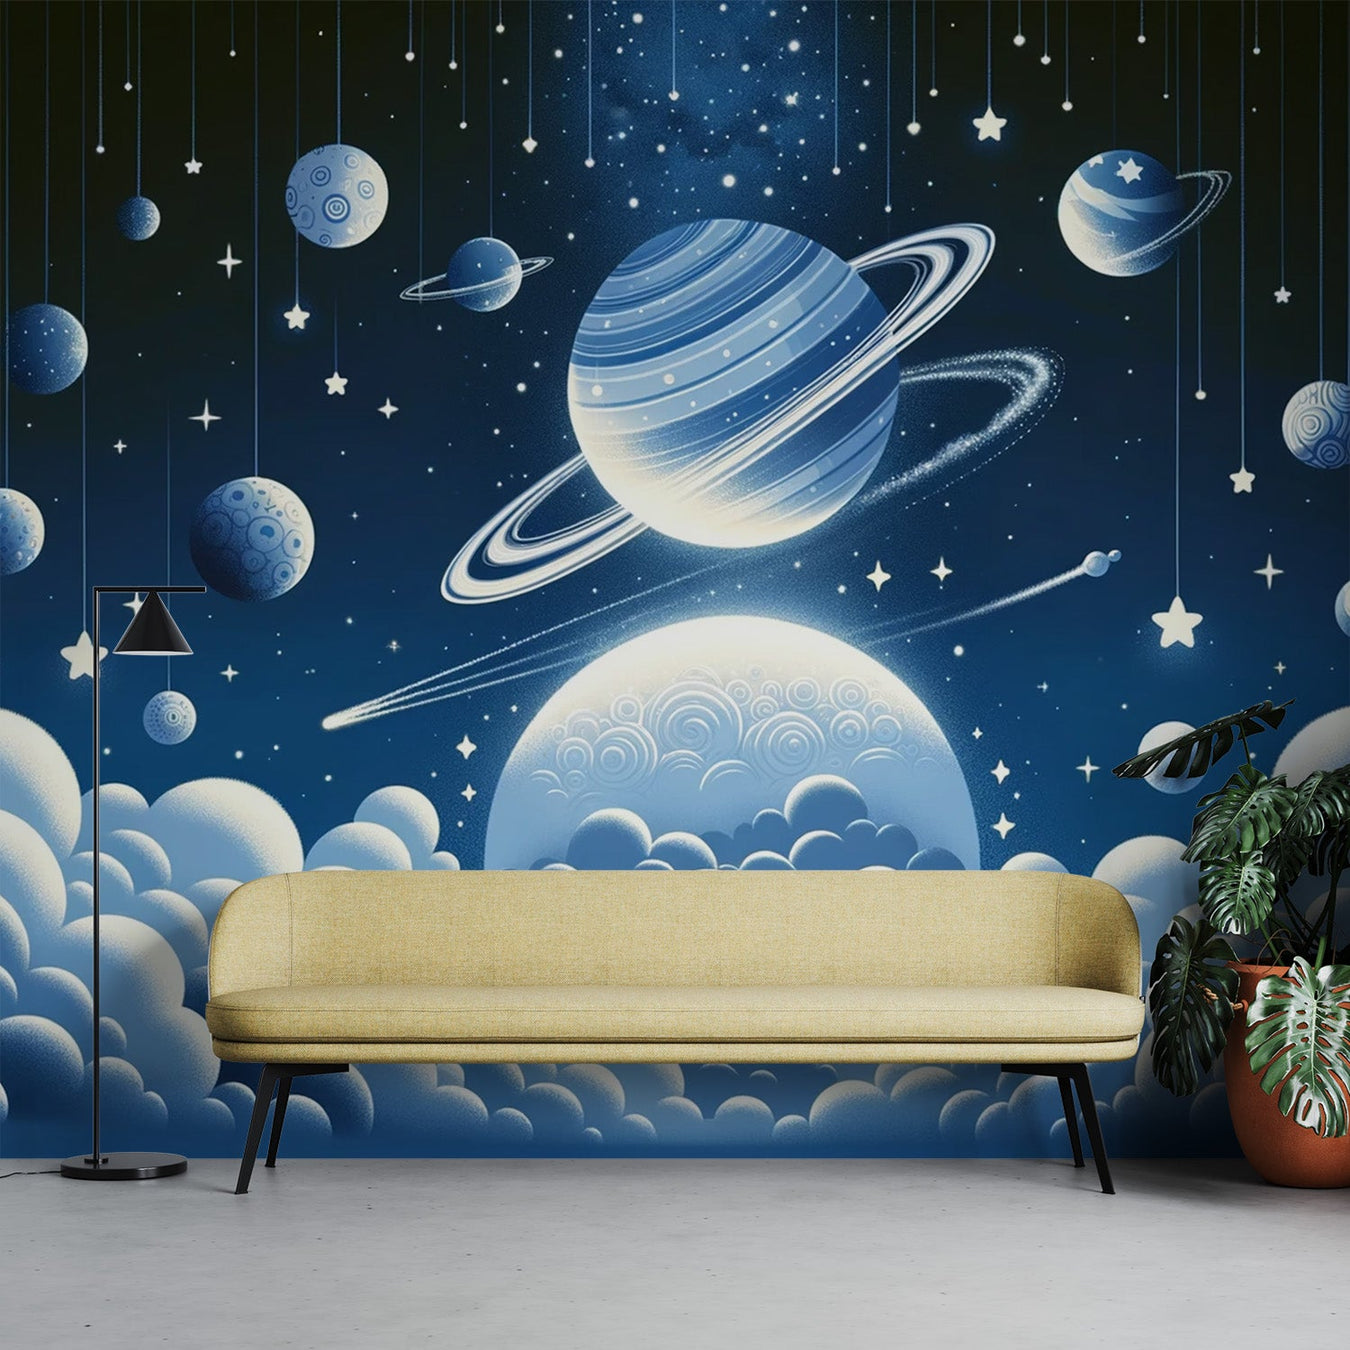 Papel pintado de astronauta